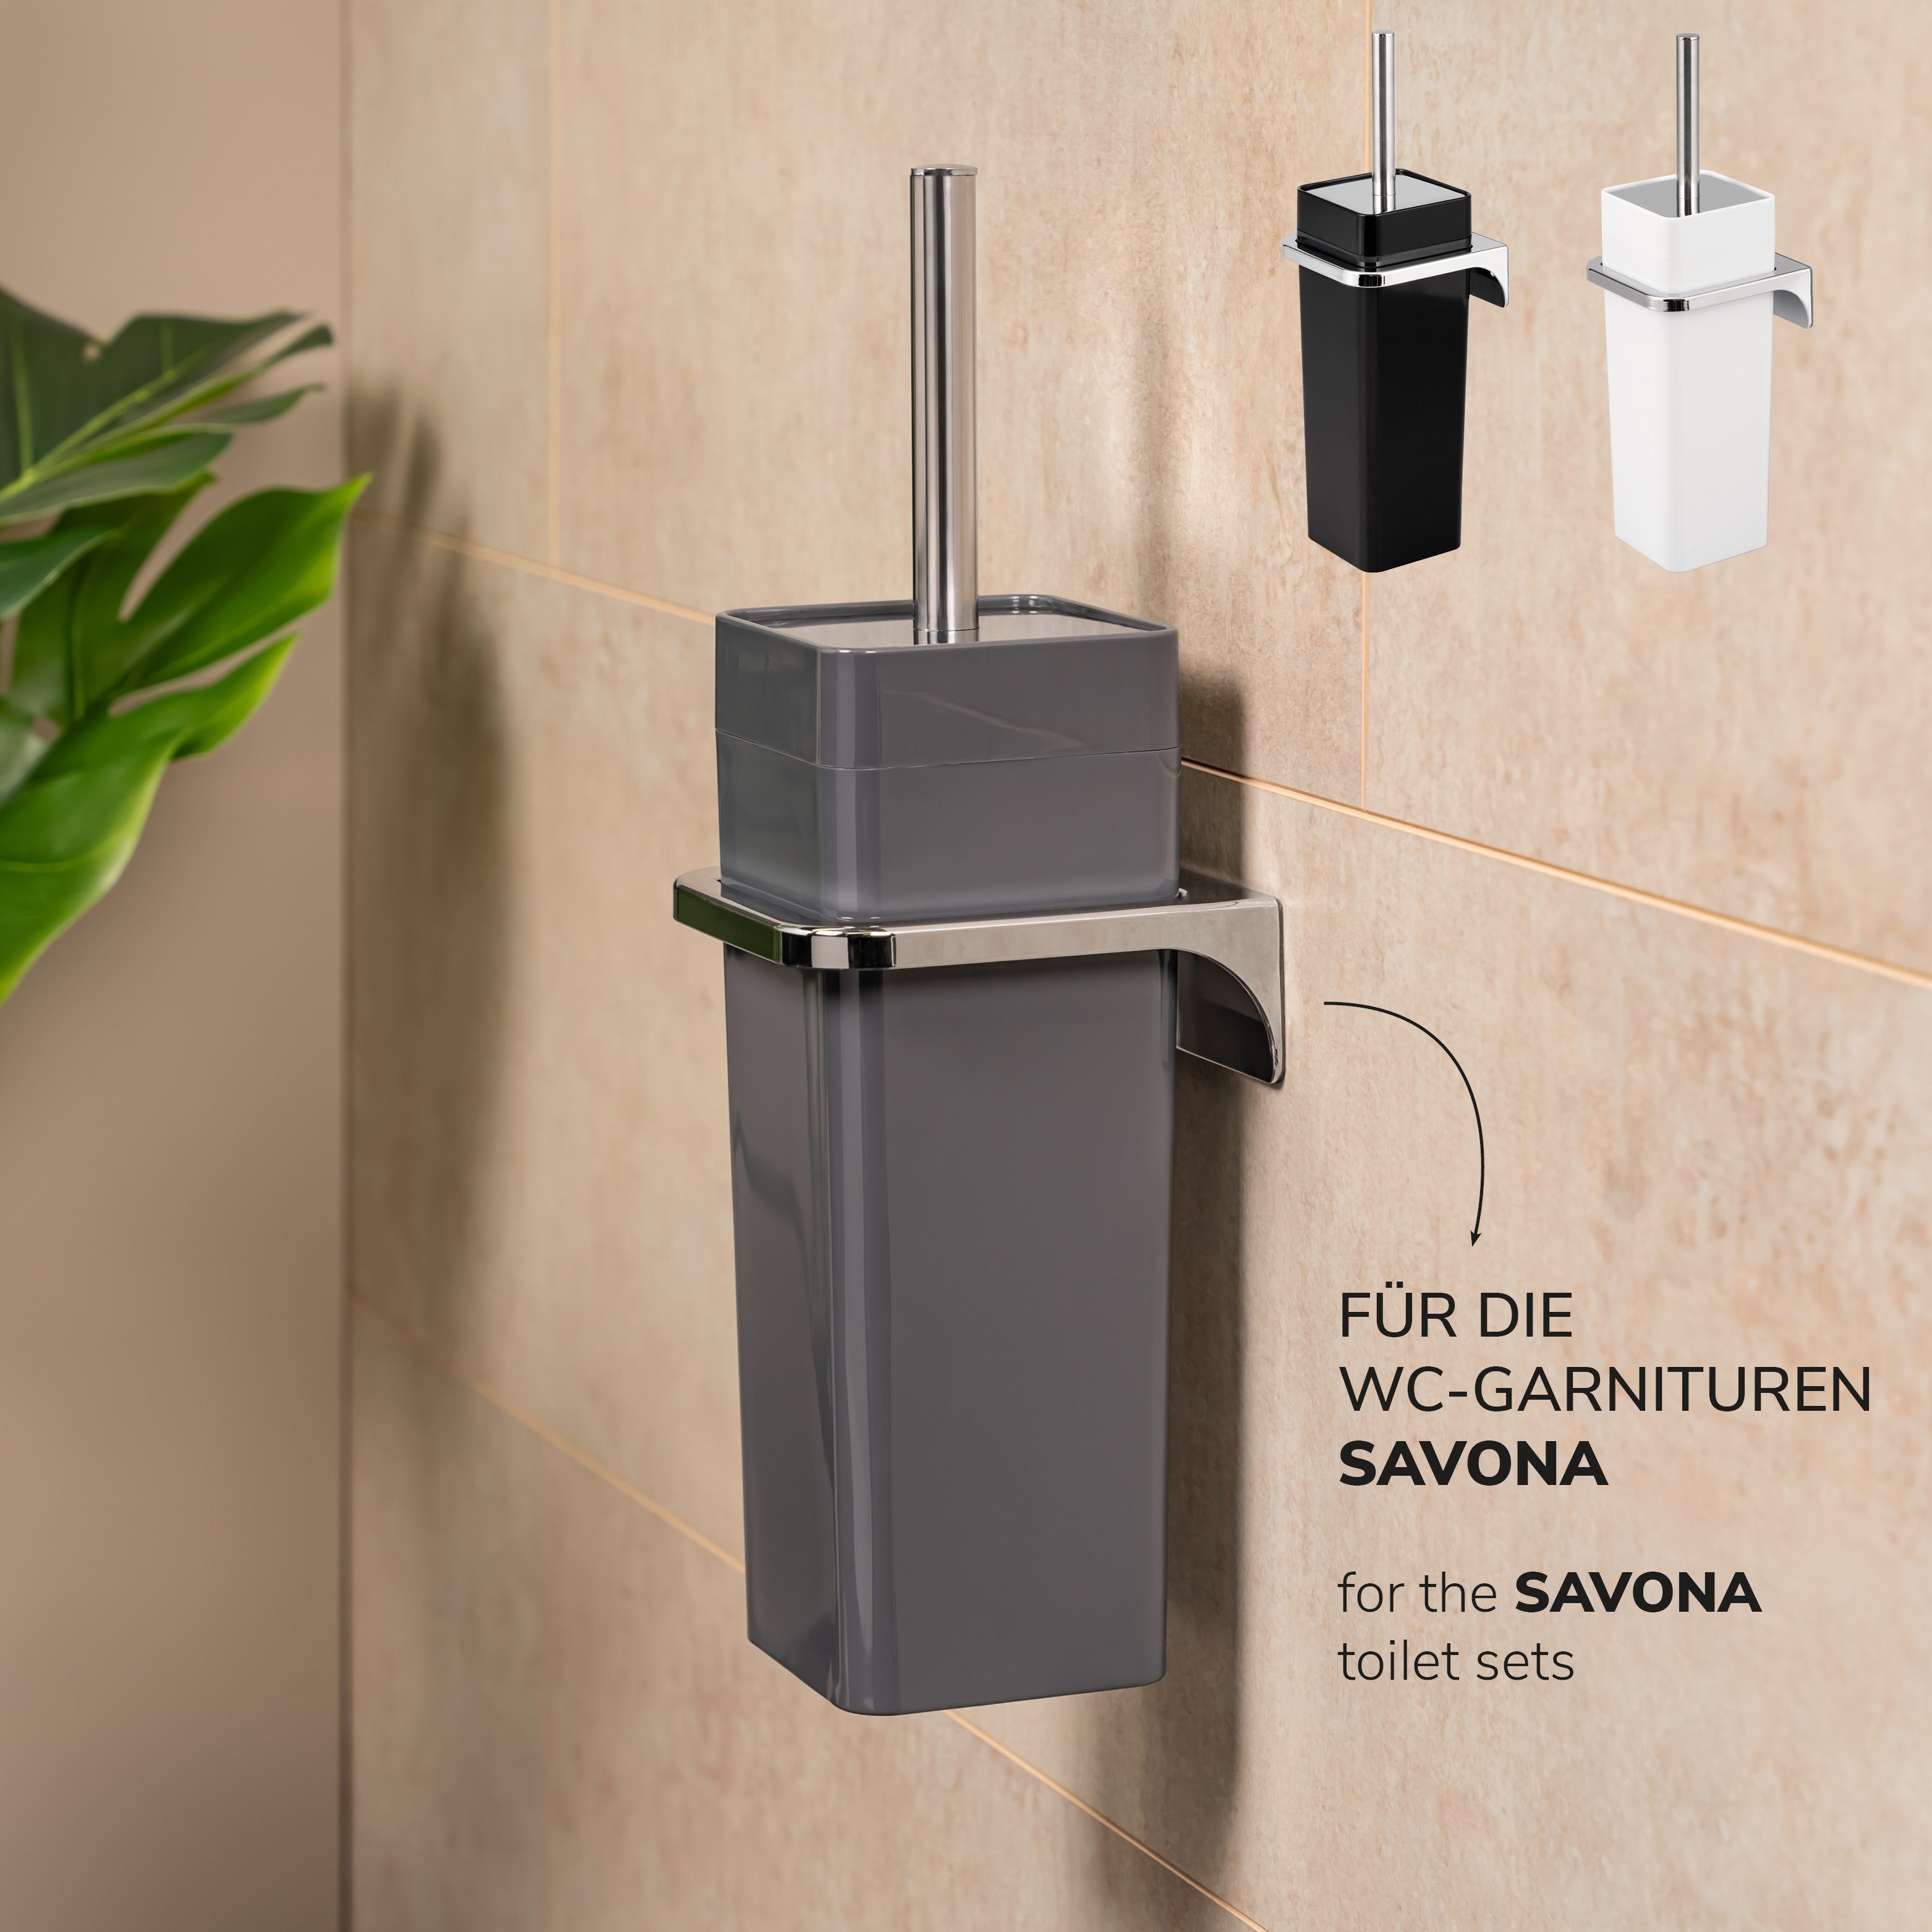 zum oder Kleben WC-Garnitur (Komplett-Set), Bohren SAVONA, bremermann SAVONA-WC-Bürsten, Wandhalterung für